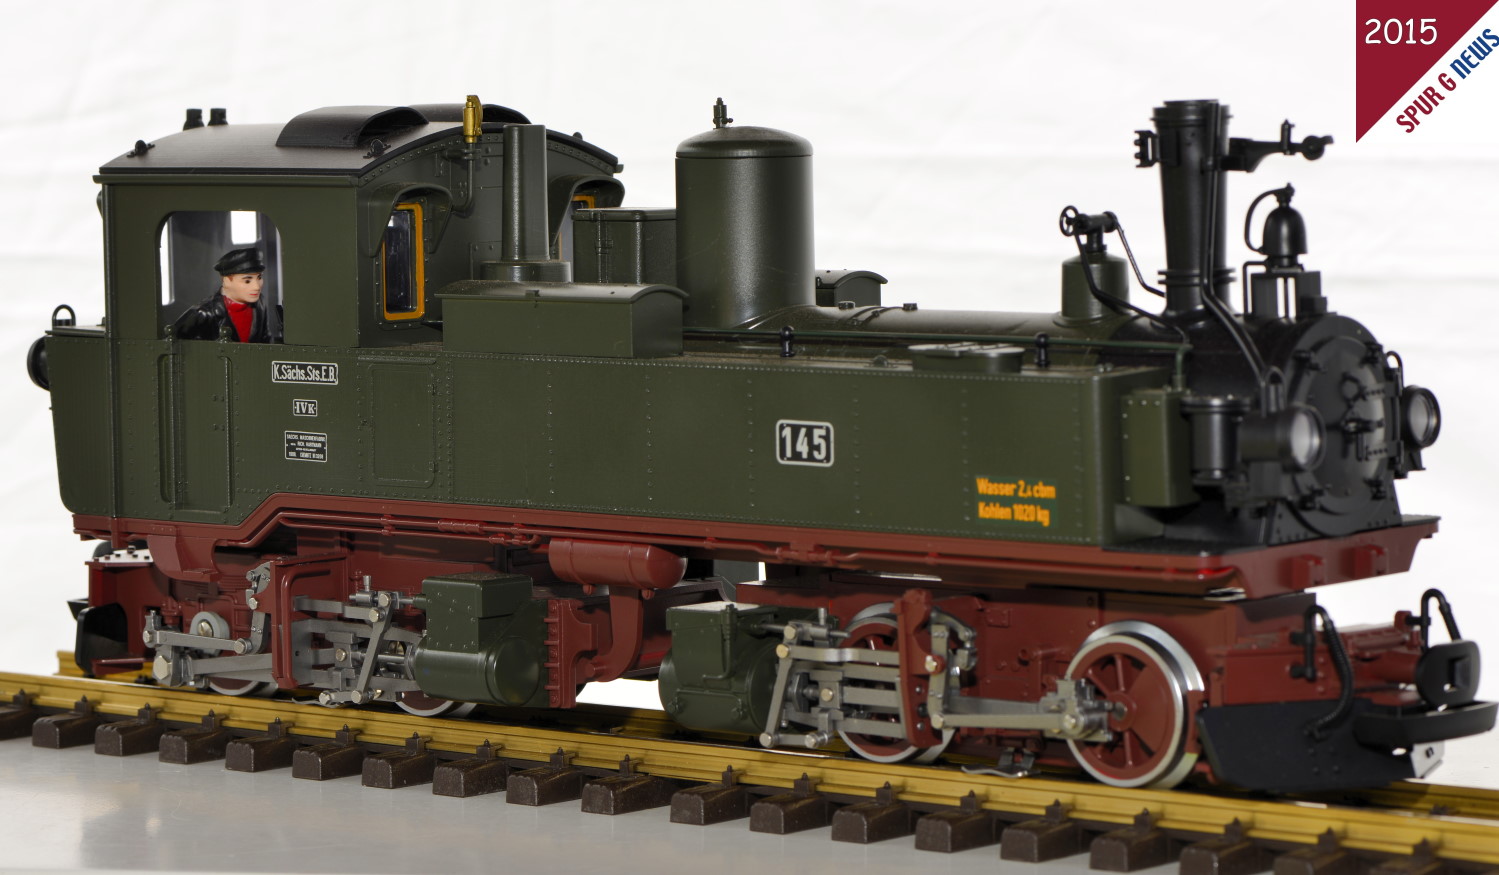 Das Handmuster der auf 399 Stck limitierten und 999 EUR kostenden LGB Lokomotive IV K Nr. 145 (LGB-Art. Nr. 26842)  im Mastab 1:22,5. Fotografiert beim Jahrestreffen der Gartenbahnfreunde Ith in Eschershausen an der Ith.